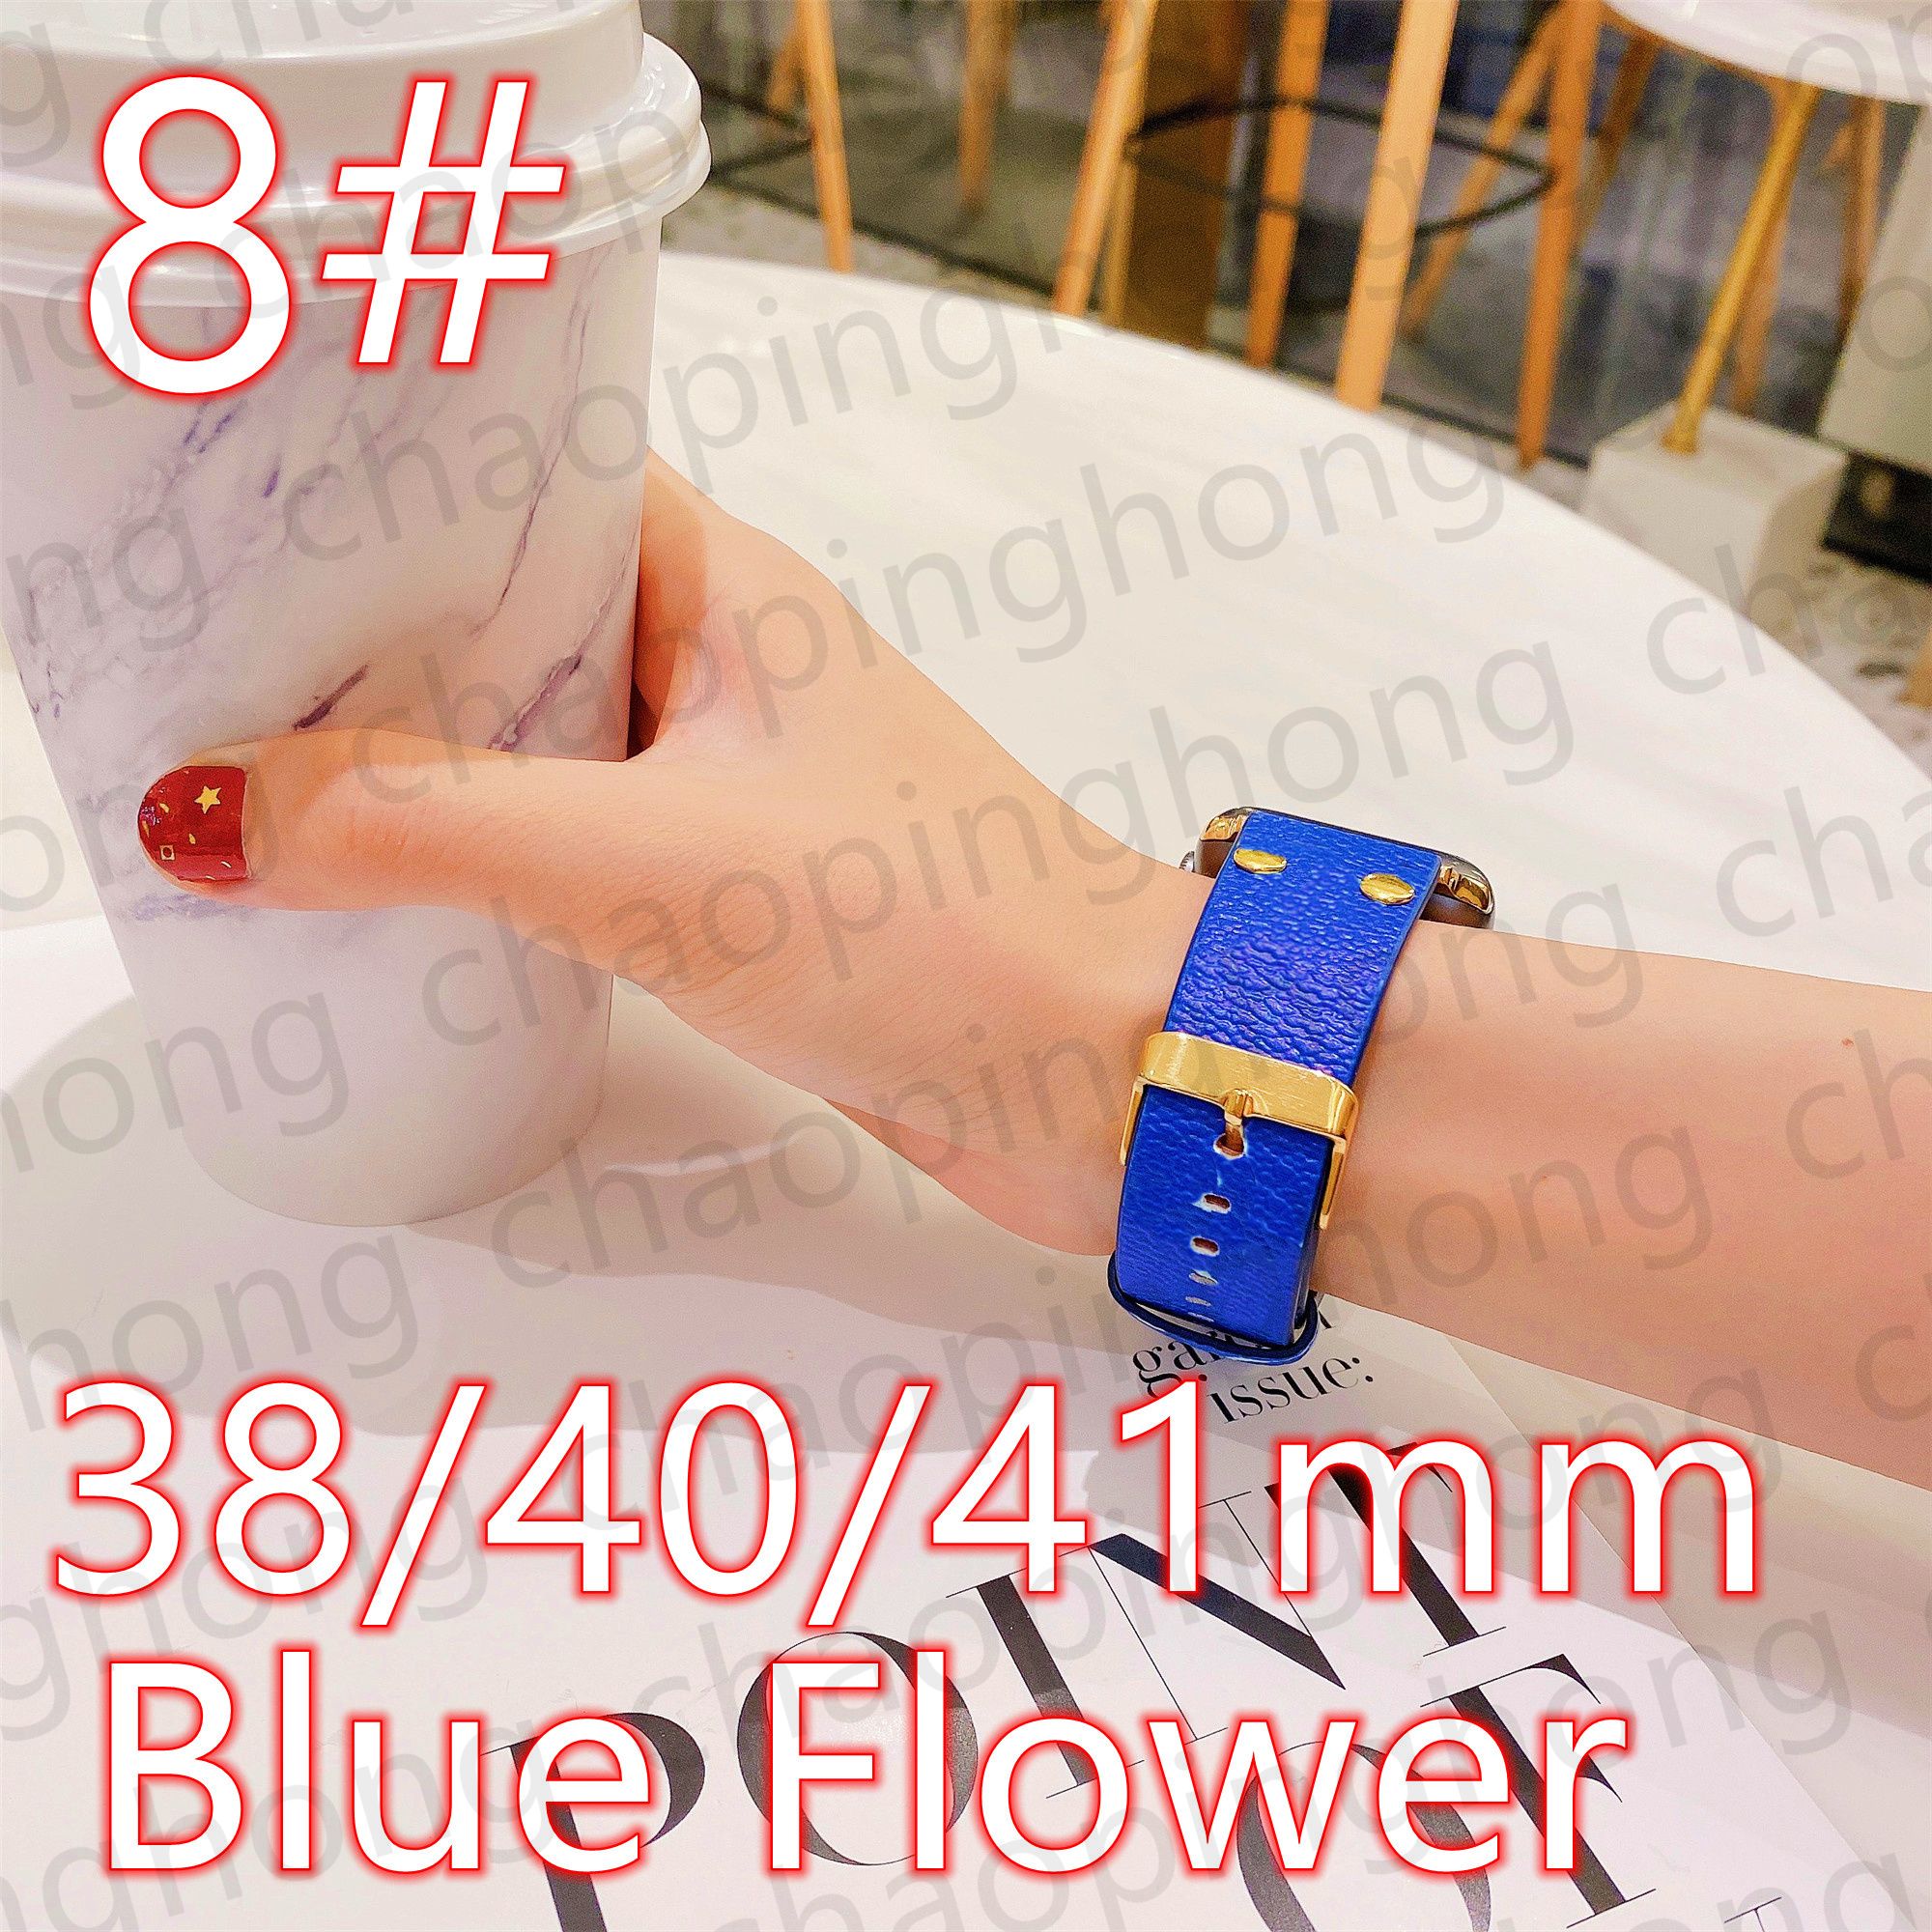 8#38/40/41mm Blue Flower V -logotyp